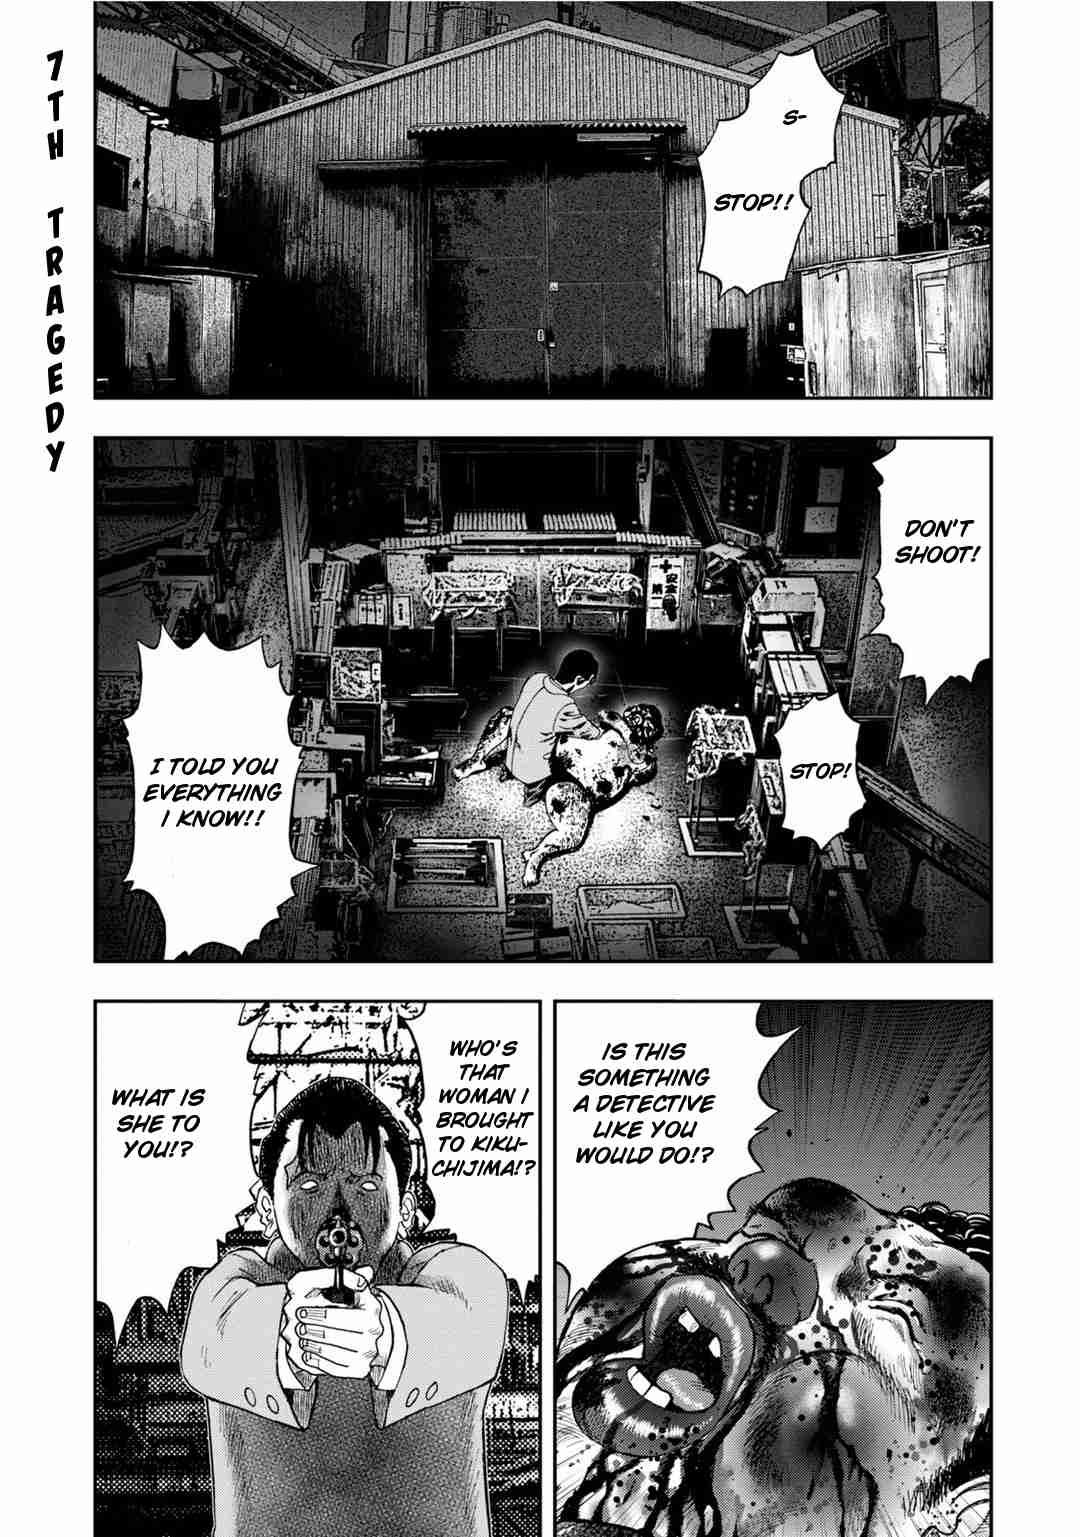 Kichikujima Vol. 2 Ch. 7 Avenger